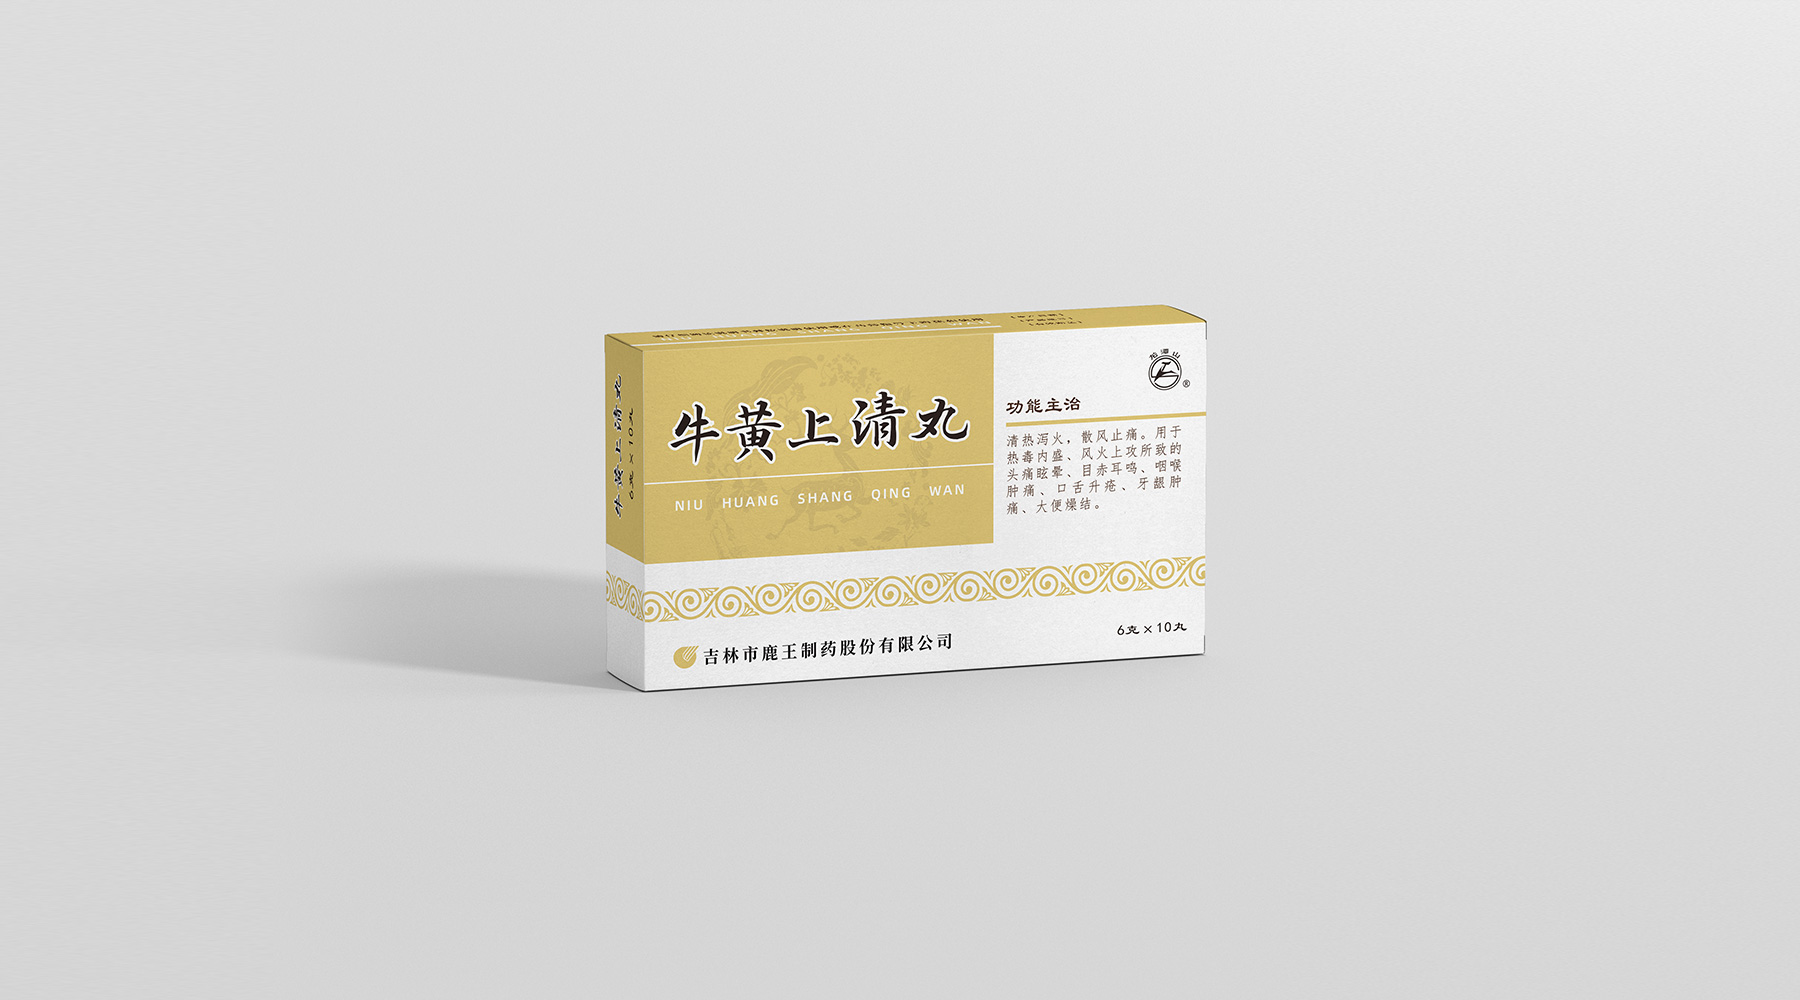 鹿王-中国色药盒系列_04.jpg